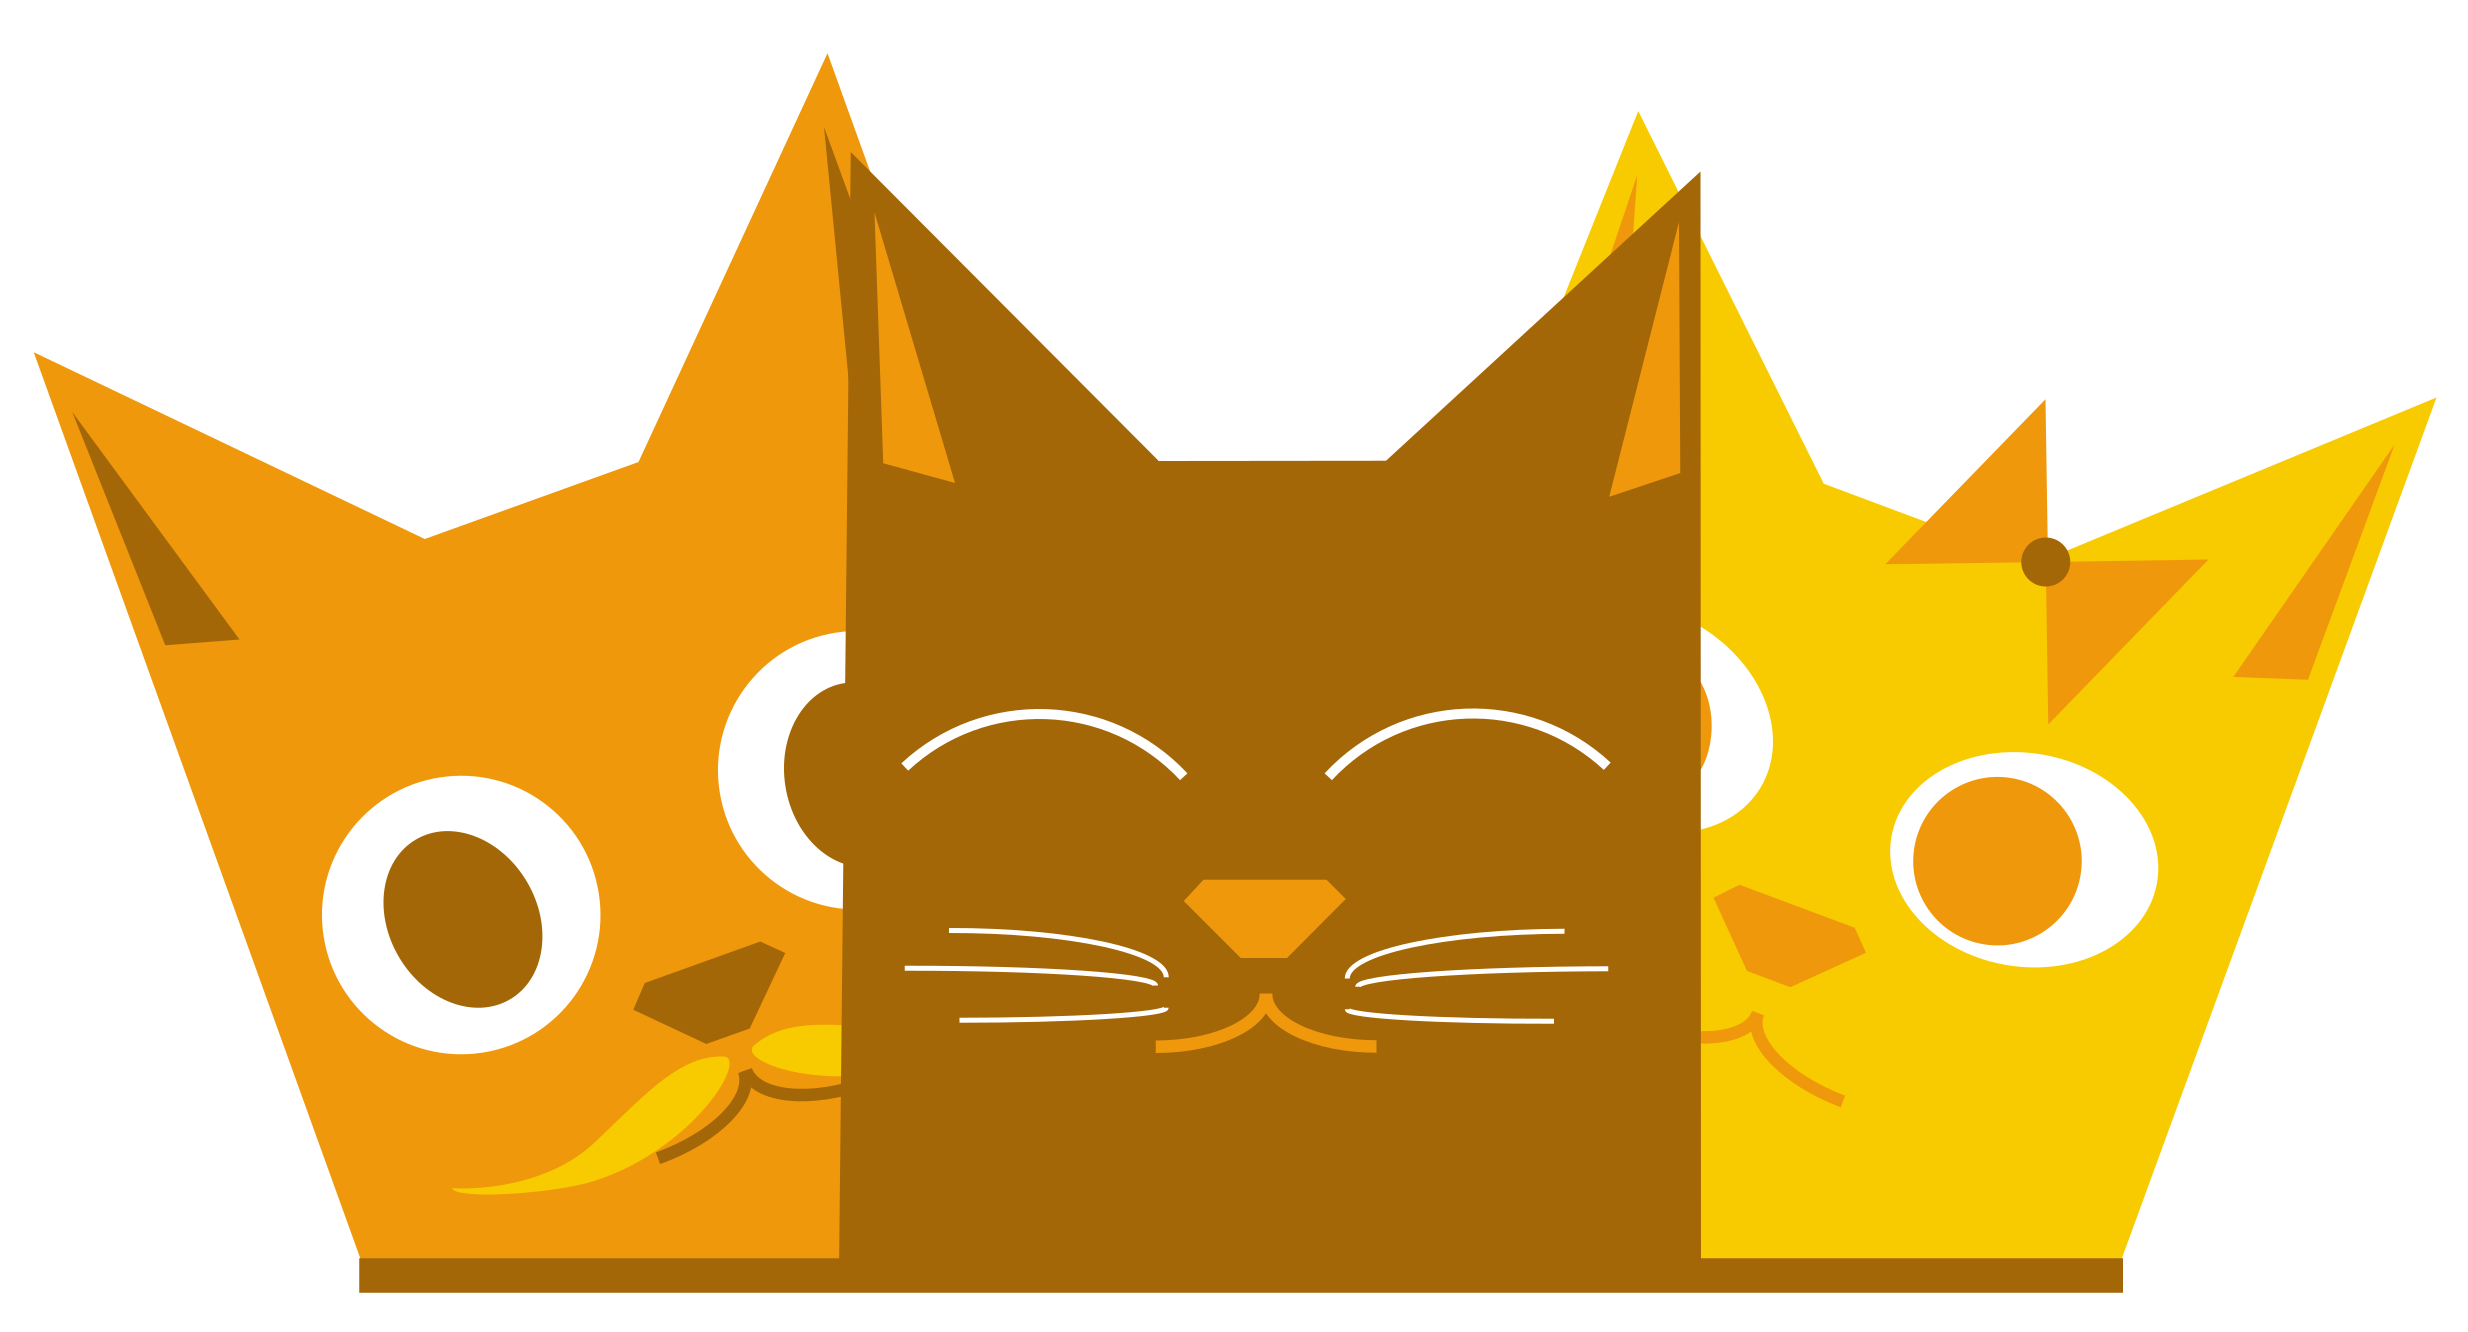 Ce logo est composé de 3 chatons jaunes